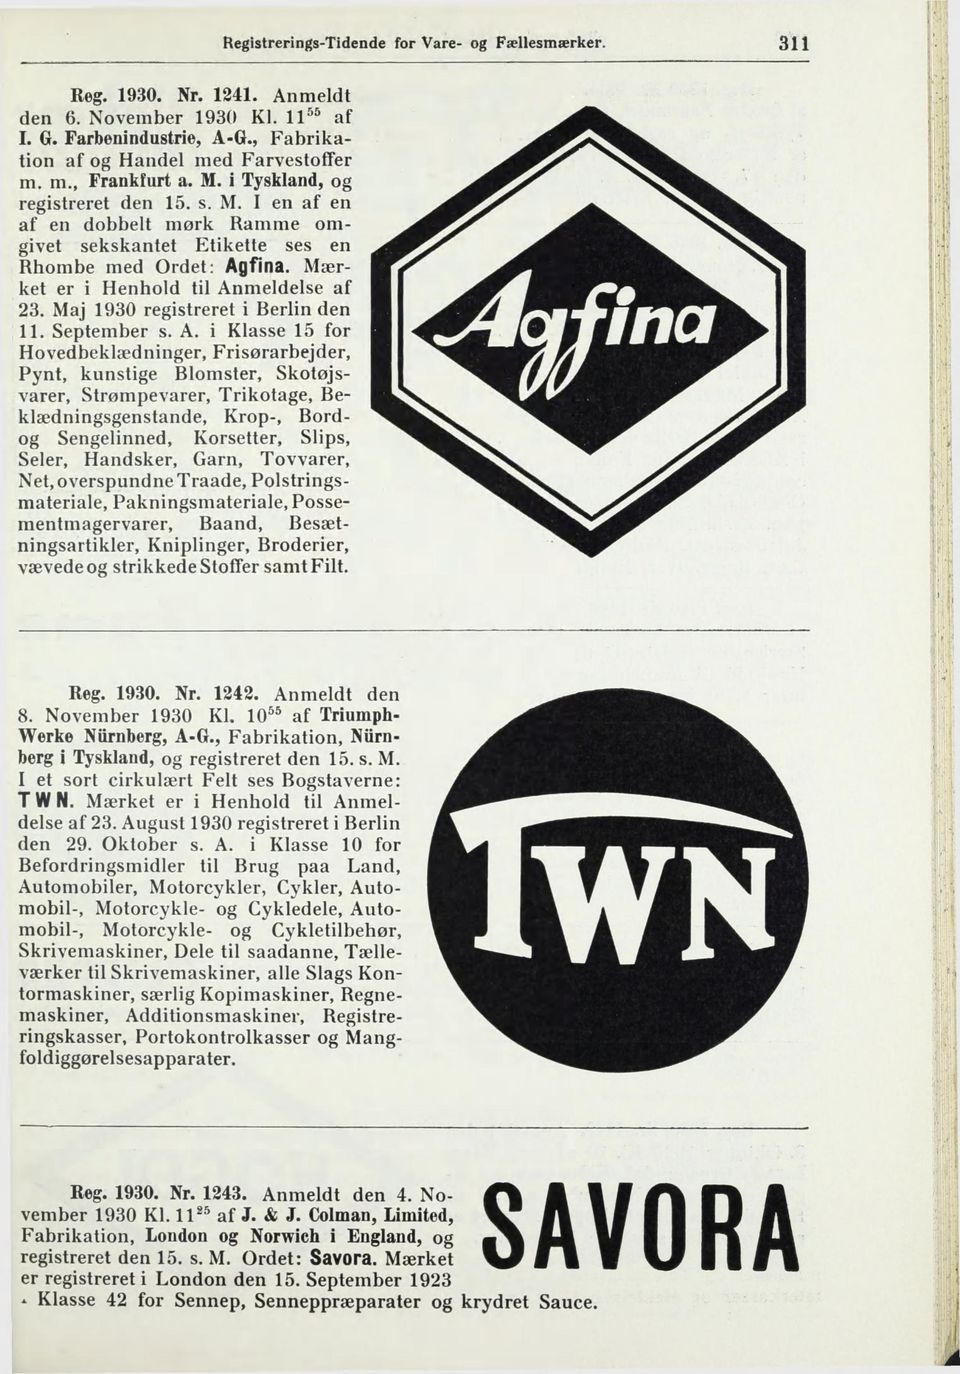 Maj 1930 registreret i Berlin den II. September s. A.